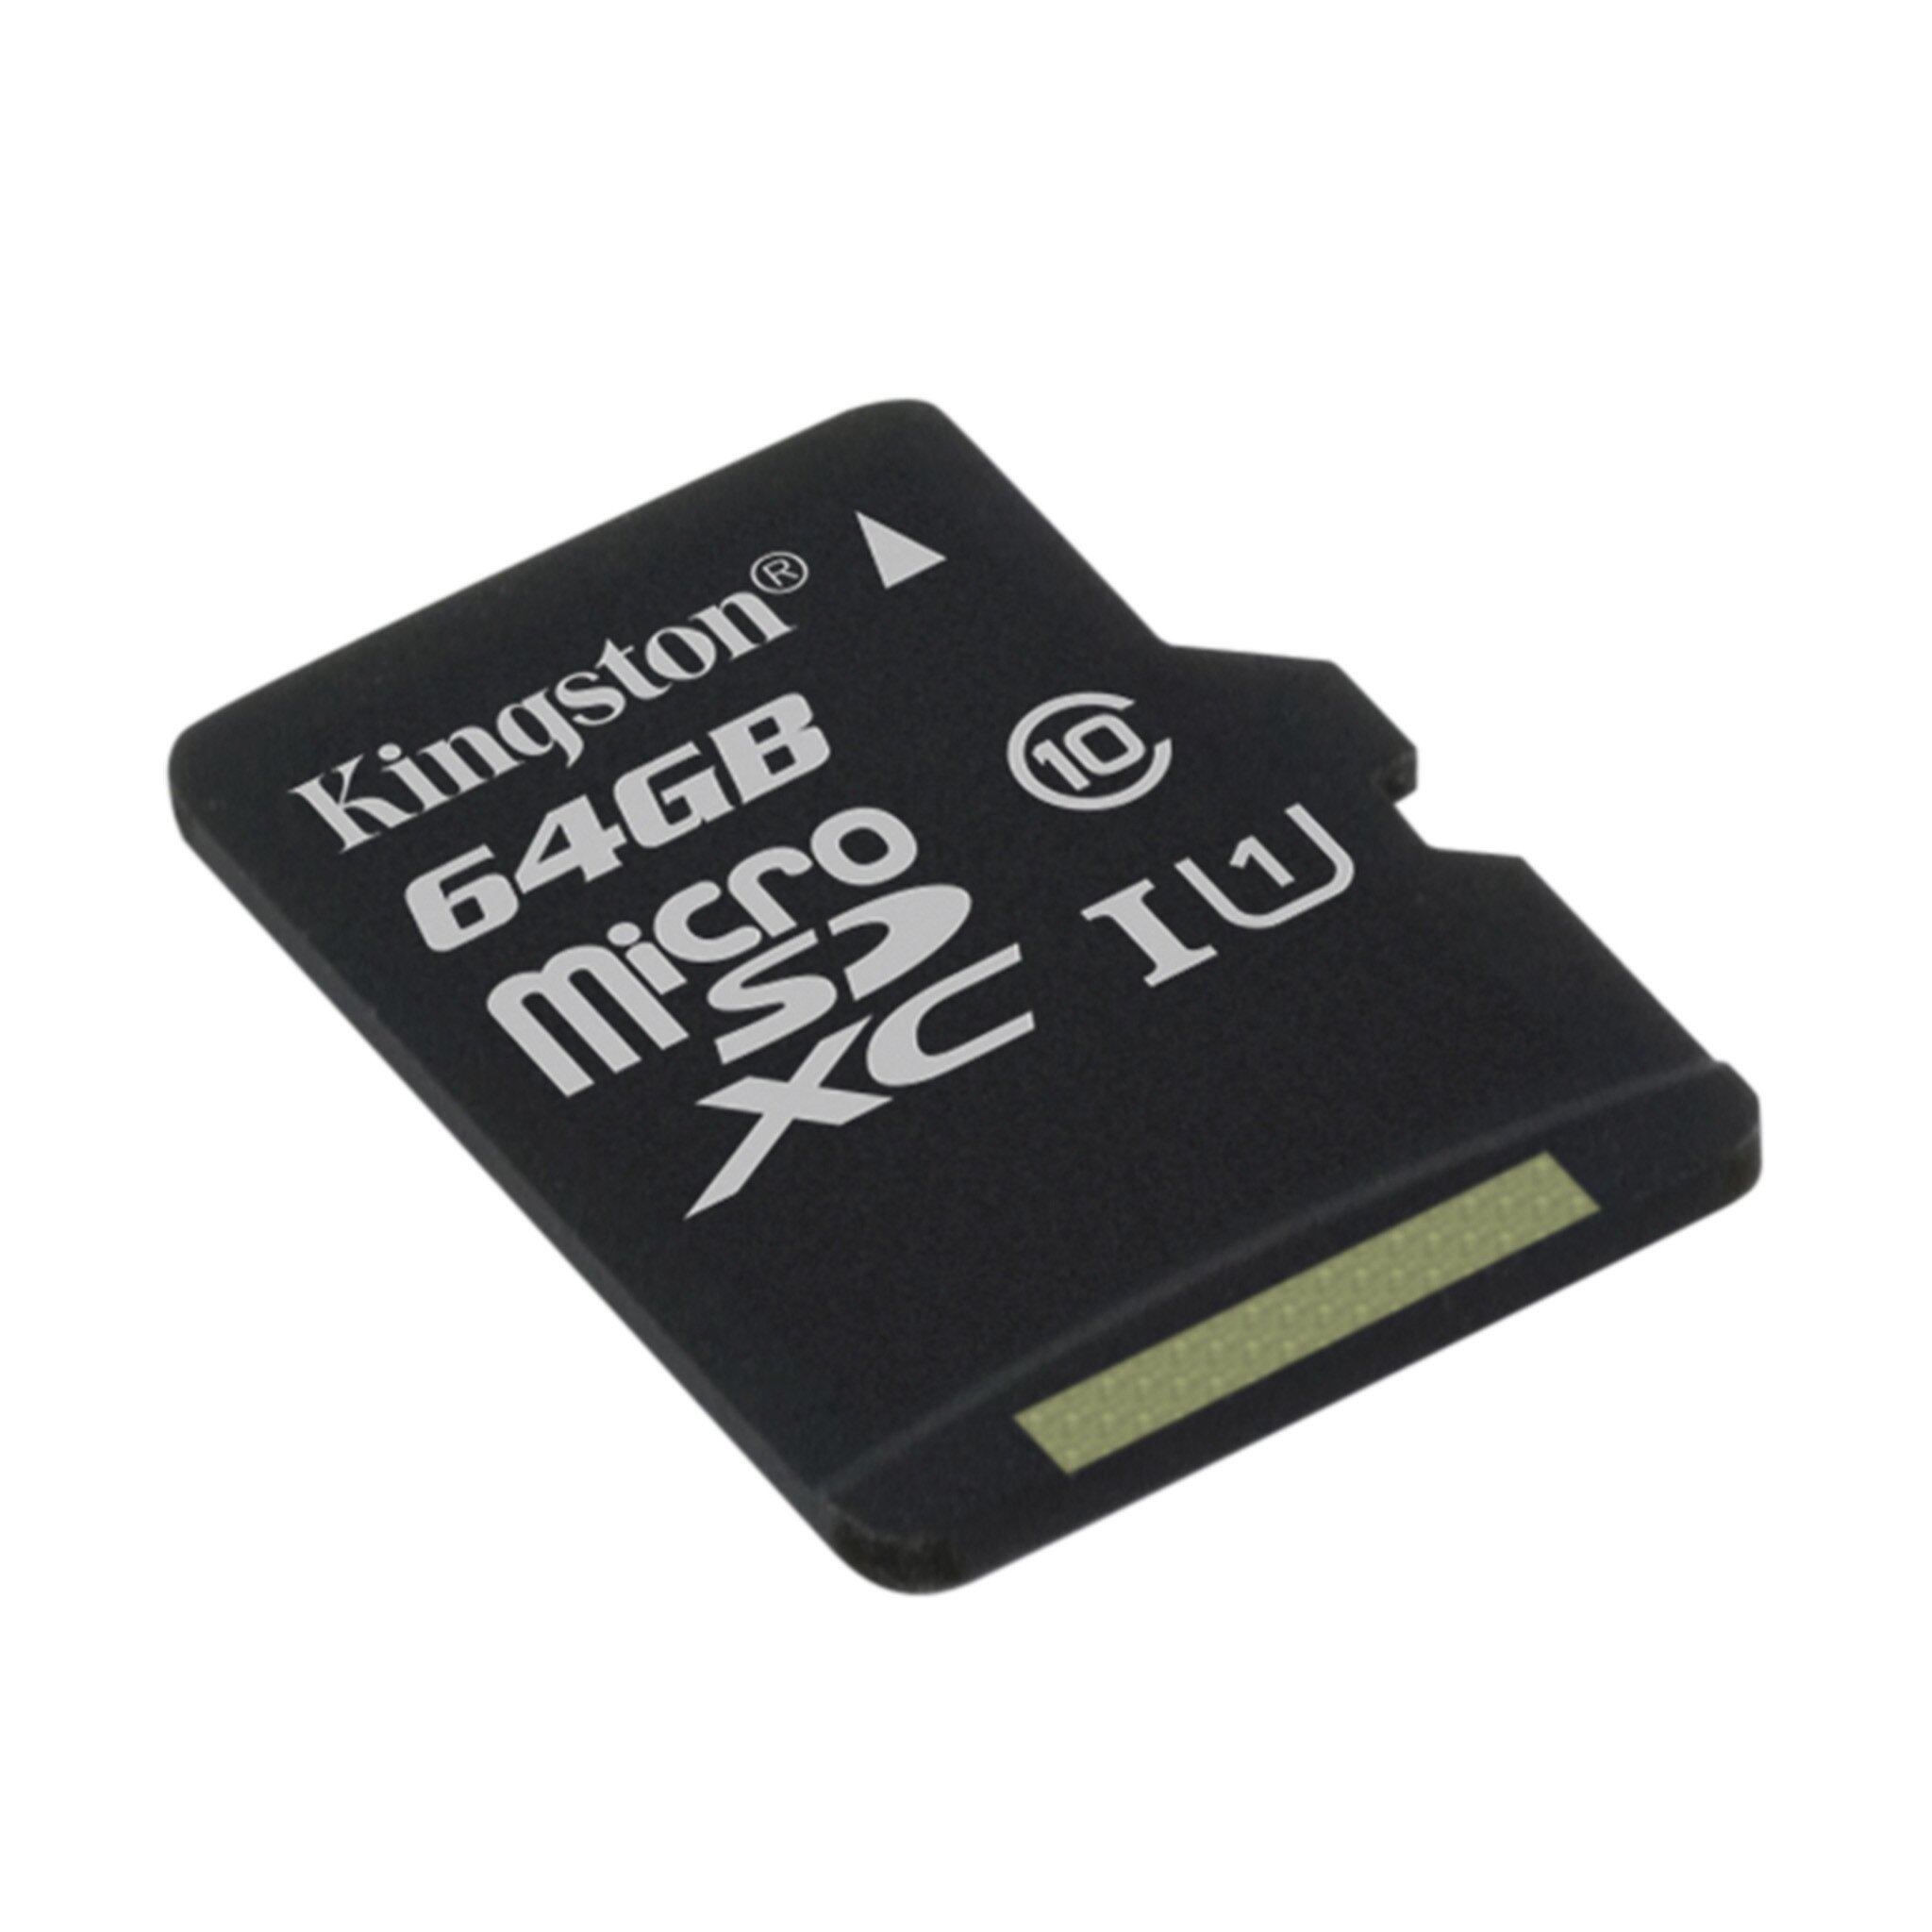 Buy Kingston Canvas Microsd Memory Card Online In Uae Tejar Com Uae